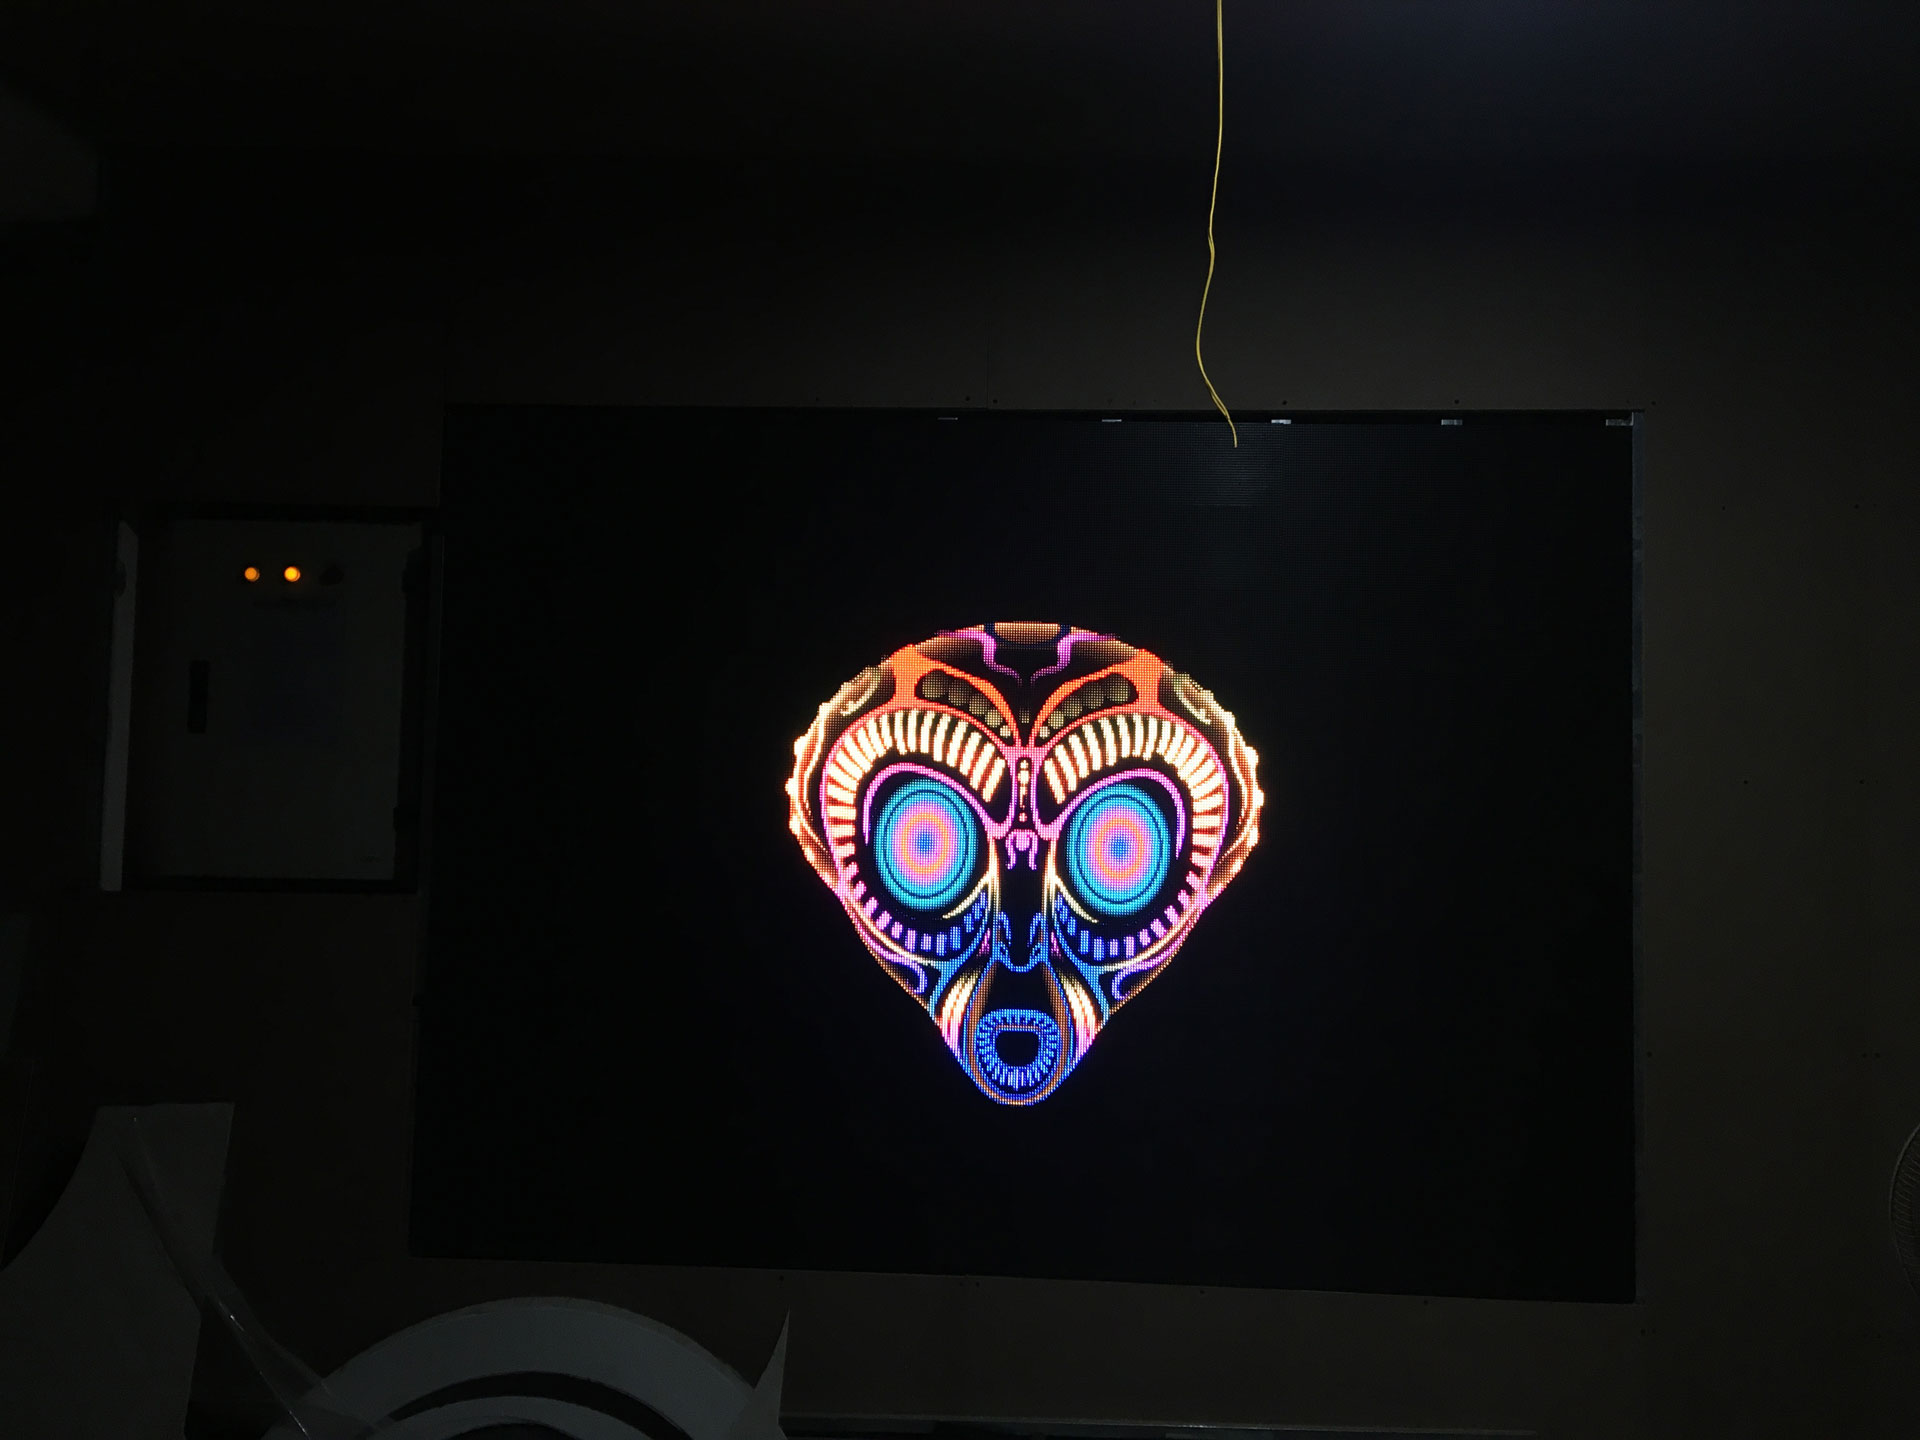 Màn hình LED trong nhà cho quán Karaoke Ngọc Trai Đen - TP Vũng Tàu.